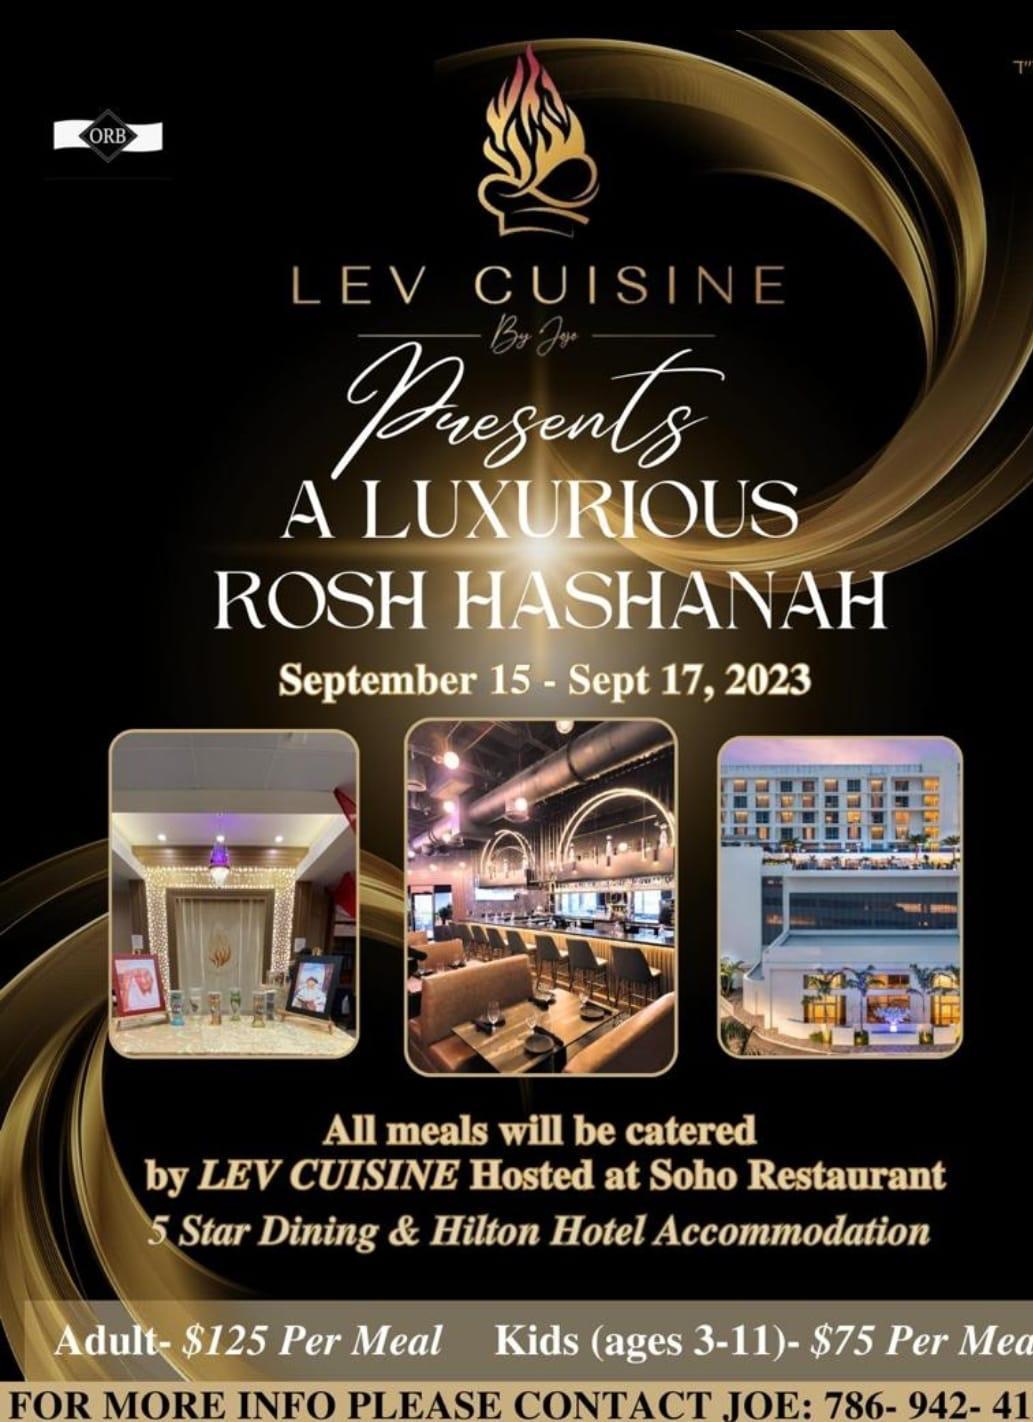 A Luxurious Rosh Hashanah